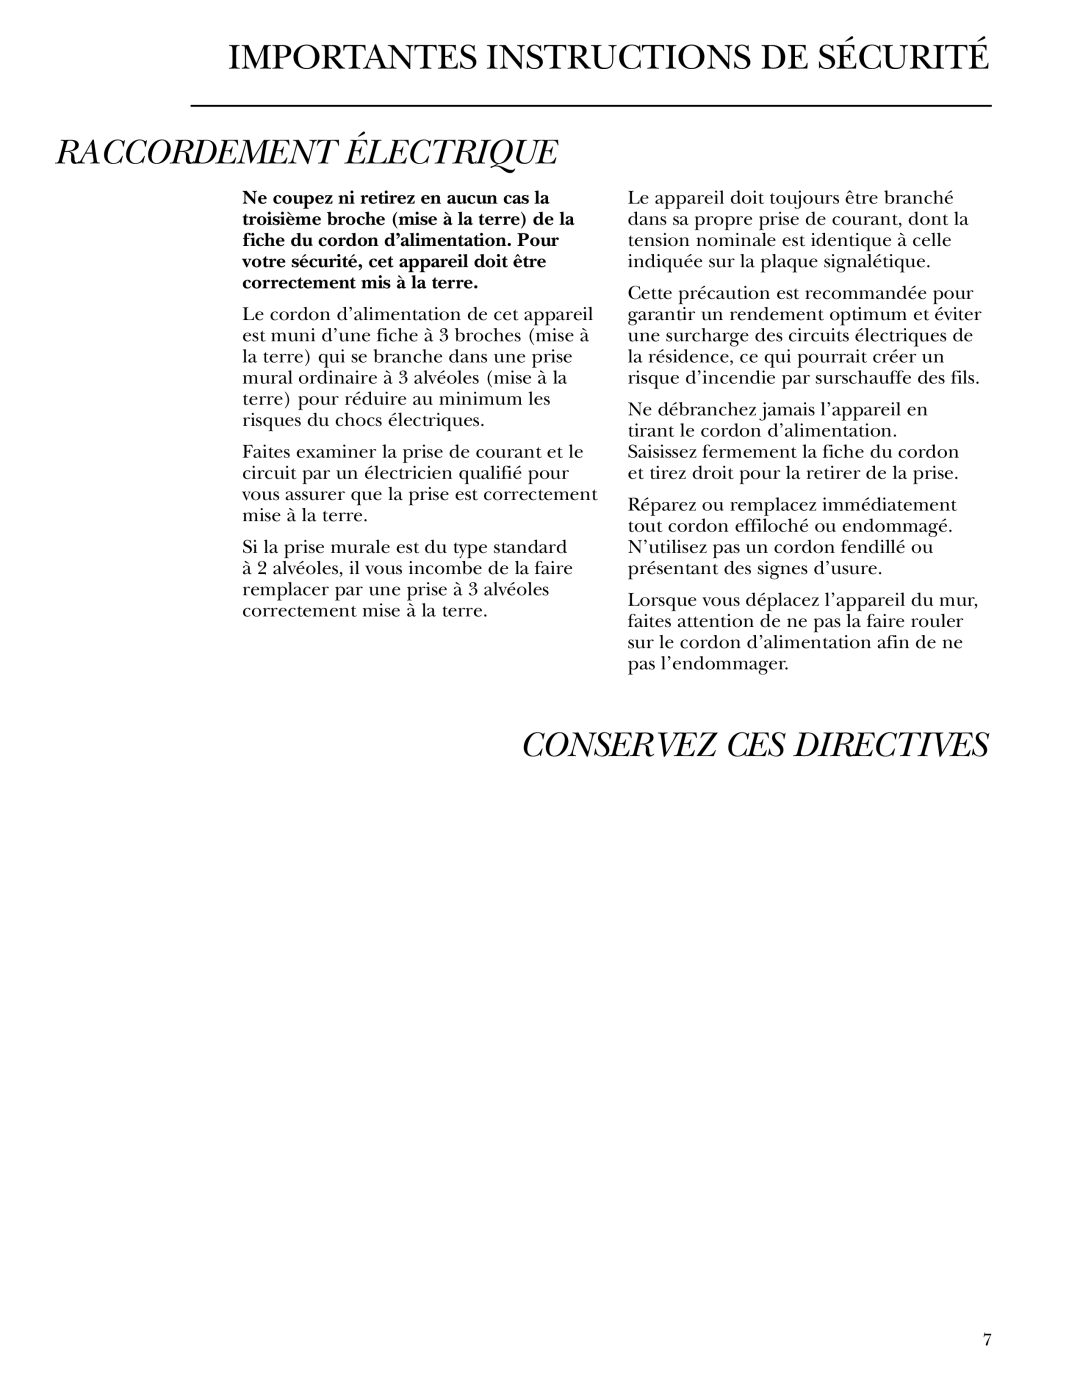 GE Monogram ZDBT210 owner manual Raccordement Électrique, Conservez Ces Directives, Importantes Instructions De Sécurité 